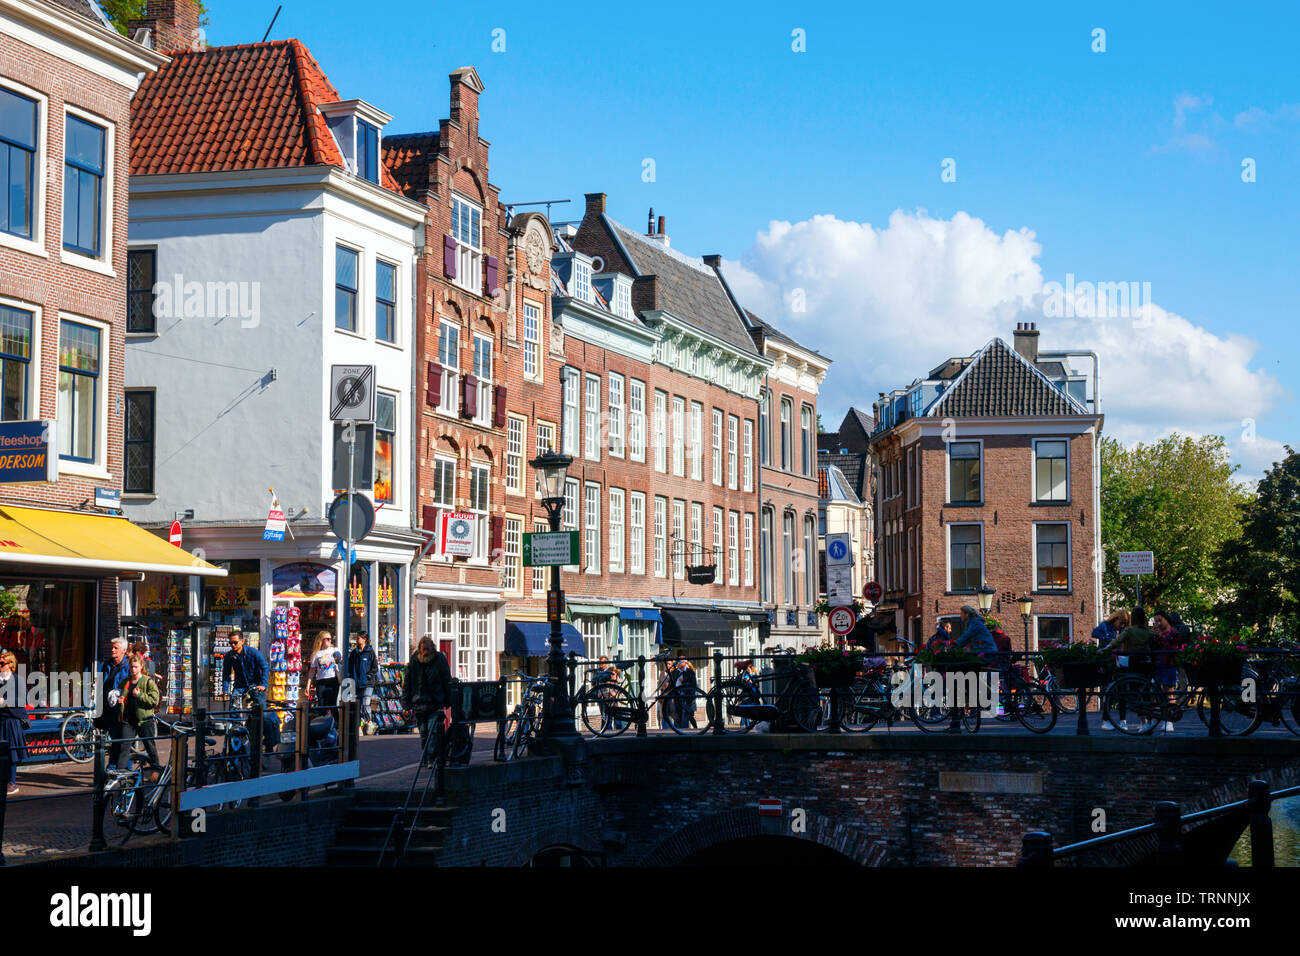 Blick auf das Stadtzentrum mit dem Vismarkt Straße (Fischmarkt) die Lichte Gaard und der Maartensbrug (Martins Brücke). Utrecht, Niederlande. Stockfoto